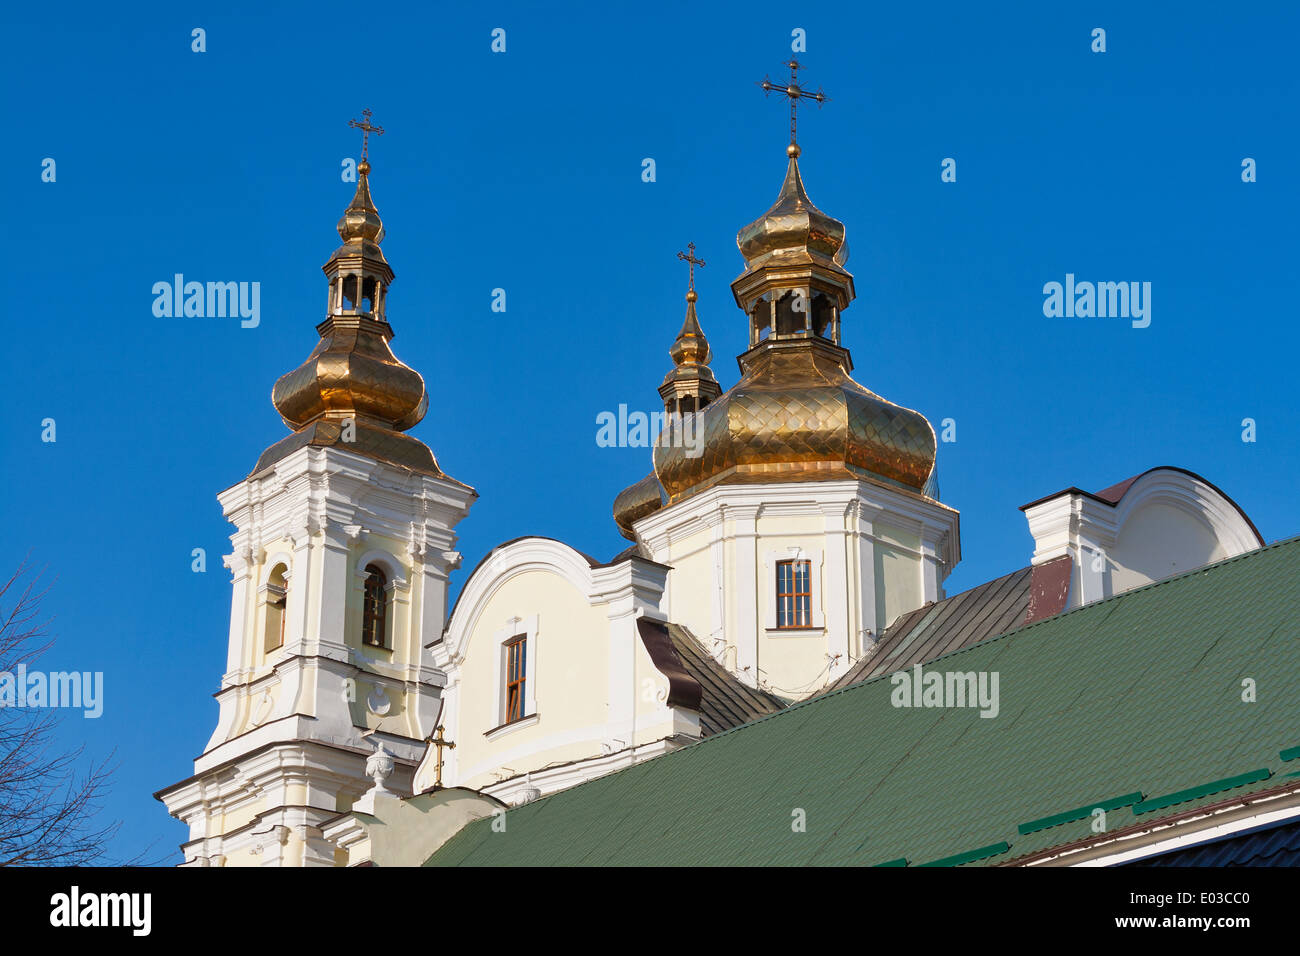 Les dômes de la cathédrale de la Transfiguration à Vinnitsa, Ukraine. Construit au 18e siècle. Banque D'Images